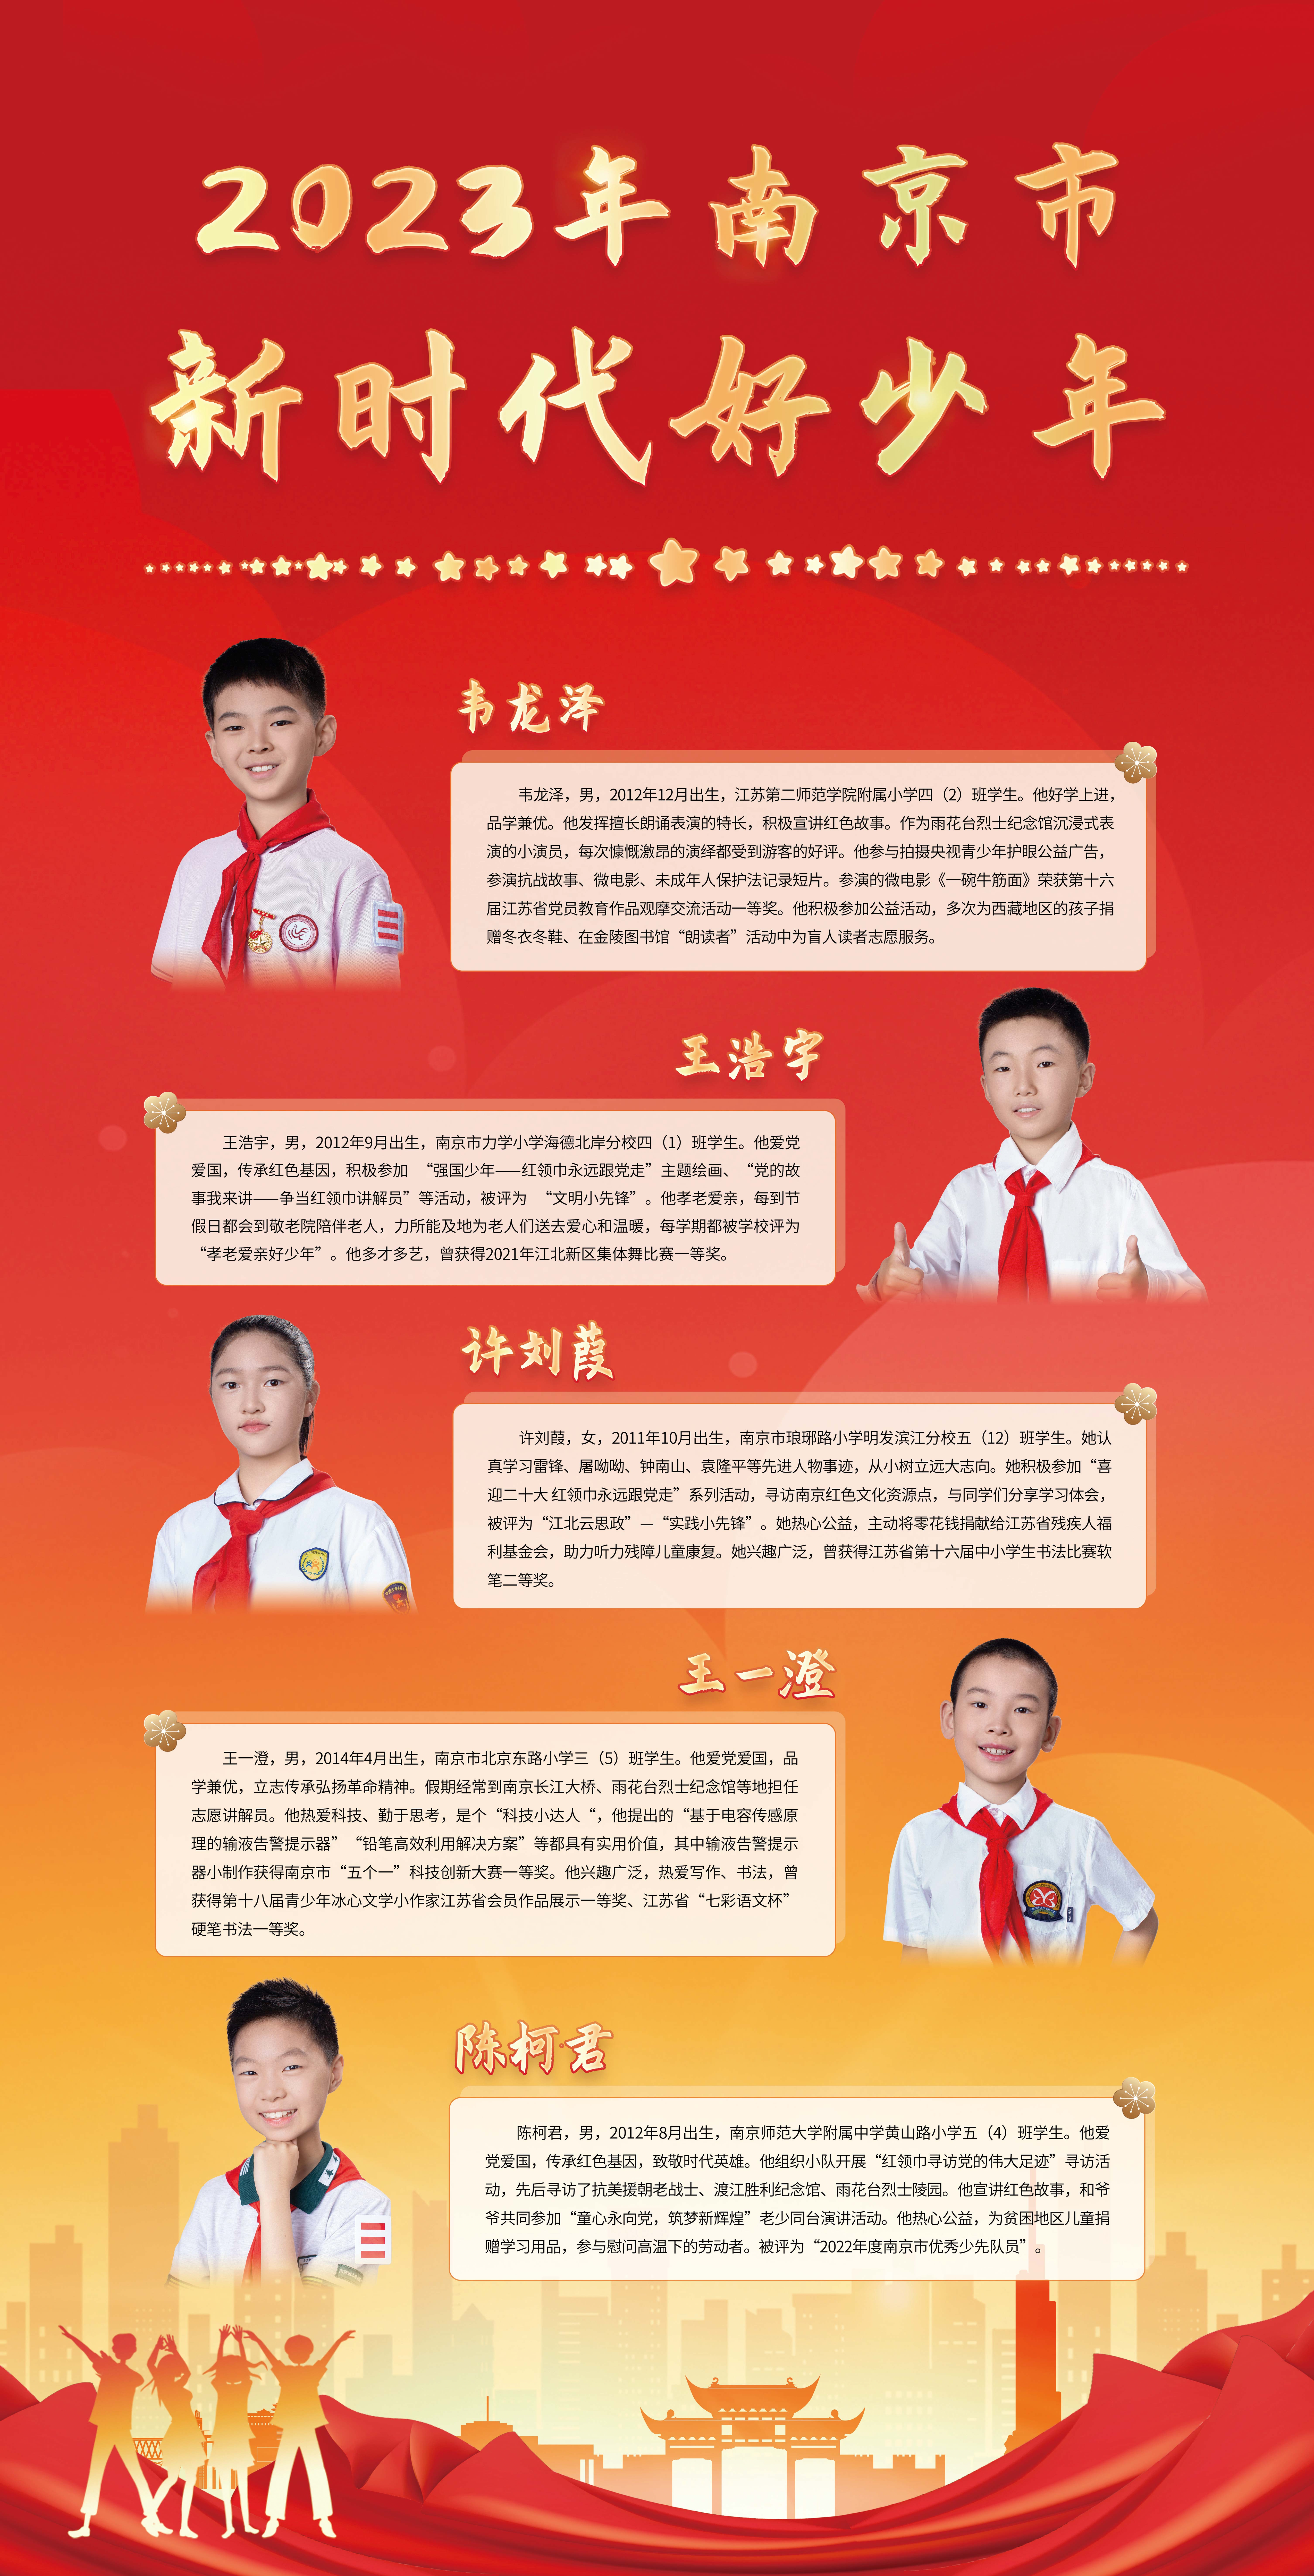 2023-年南京市第一批“新时代好少年”宣传展示图7.jpg